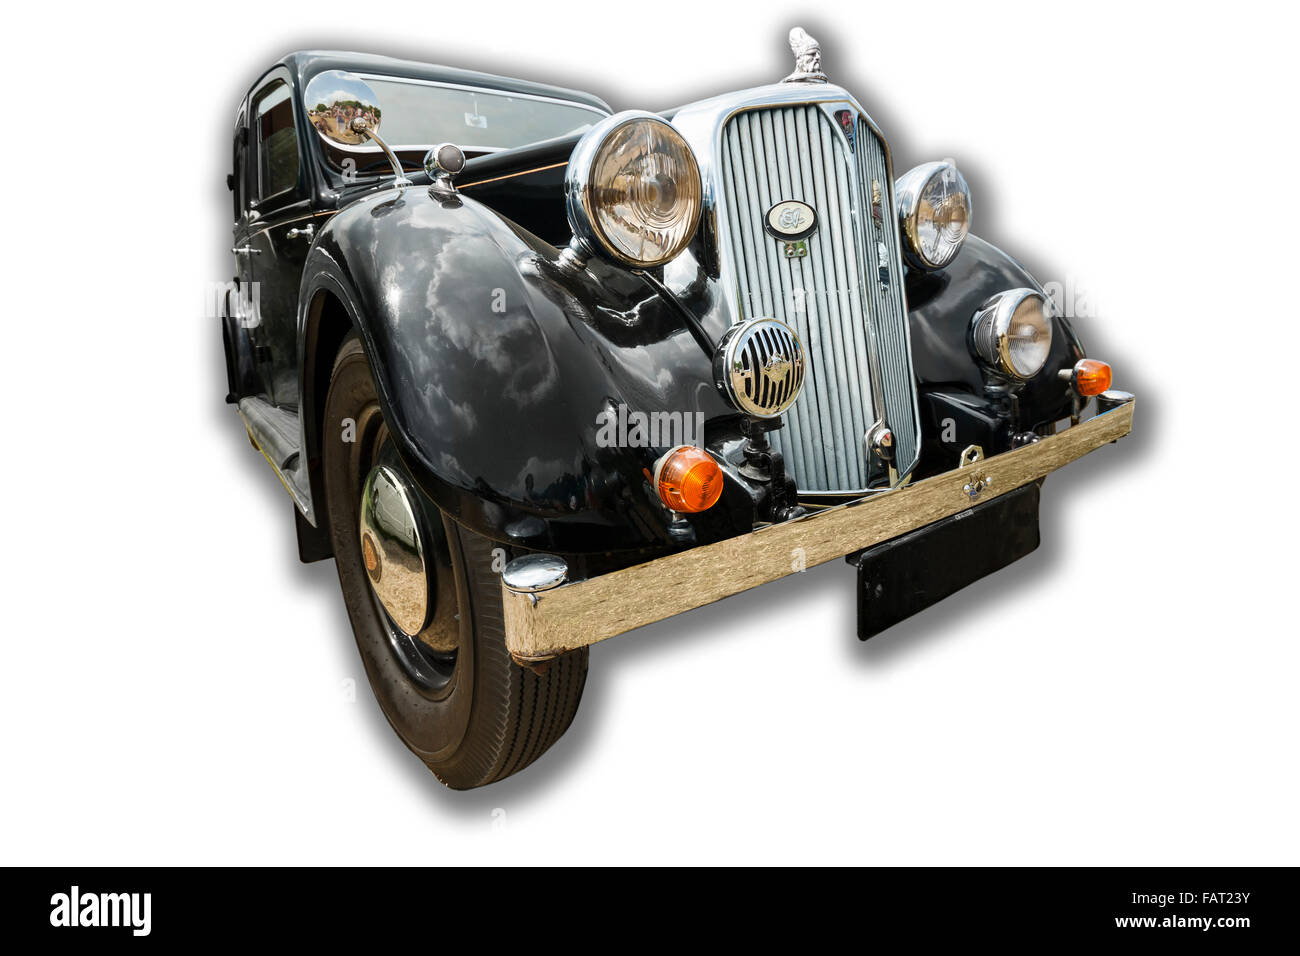 Billericay, Essex, UK - Juli 2013: Sommer Fest Oldtimer zu zeigen, zeigte schöne 1938 Modell Rover 14 Saloon. Stockfoto